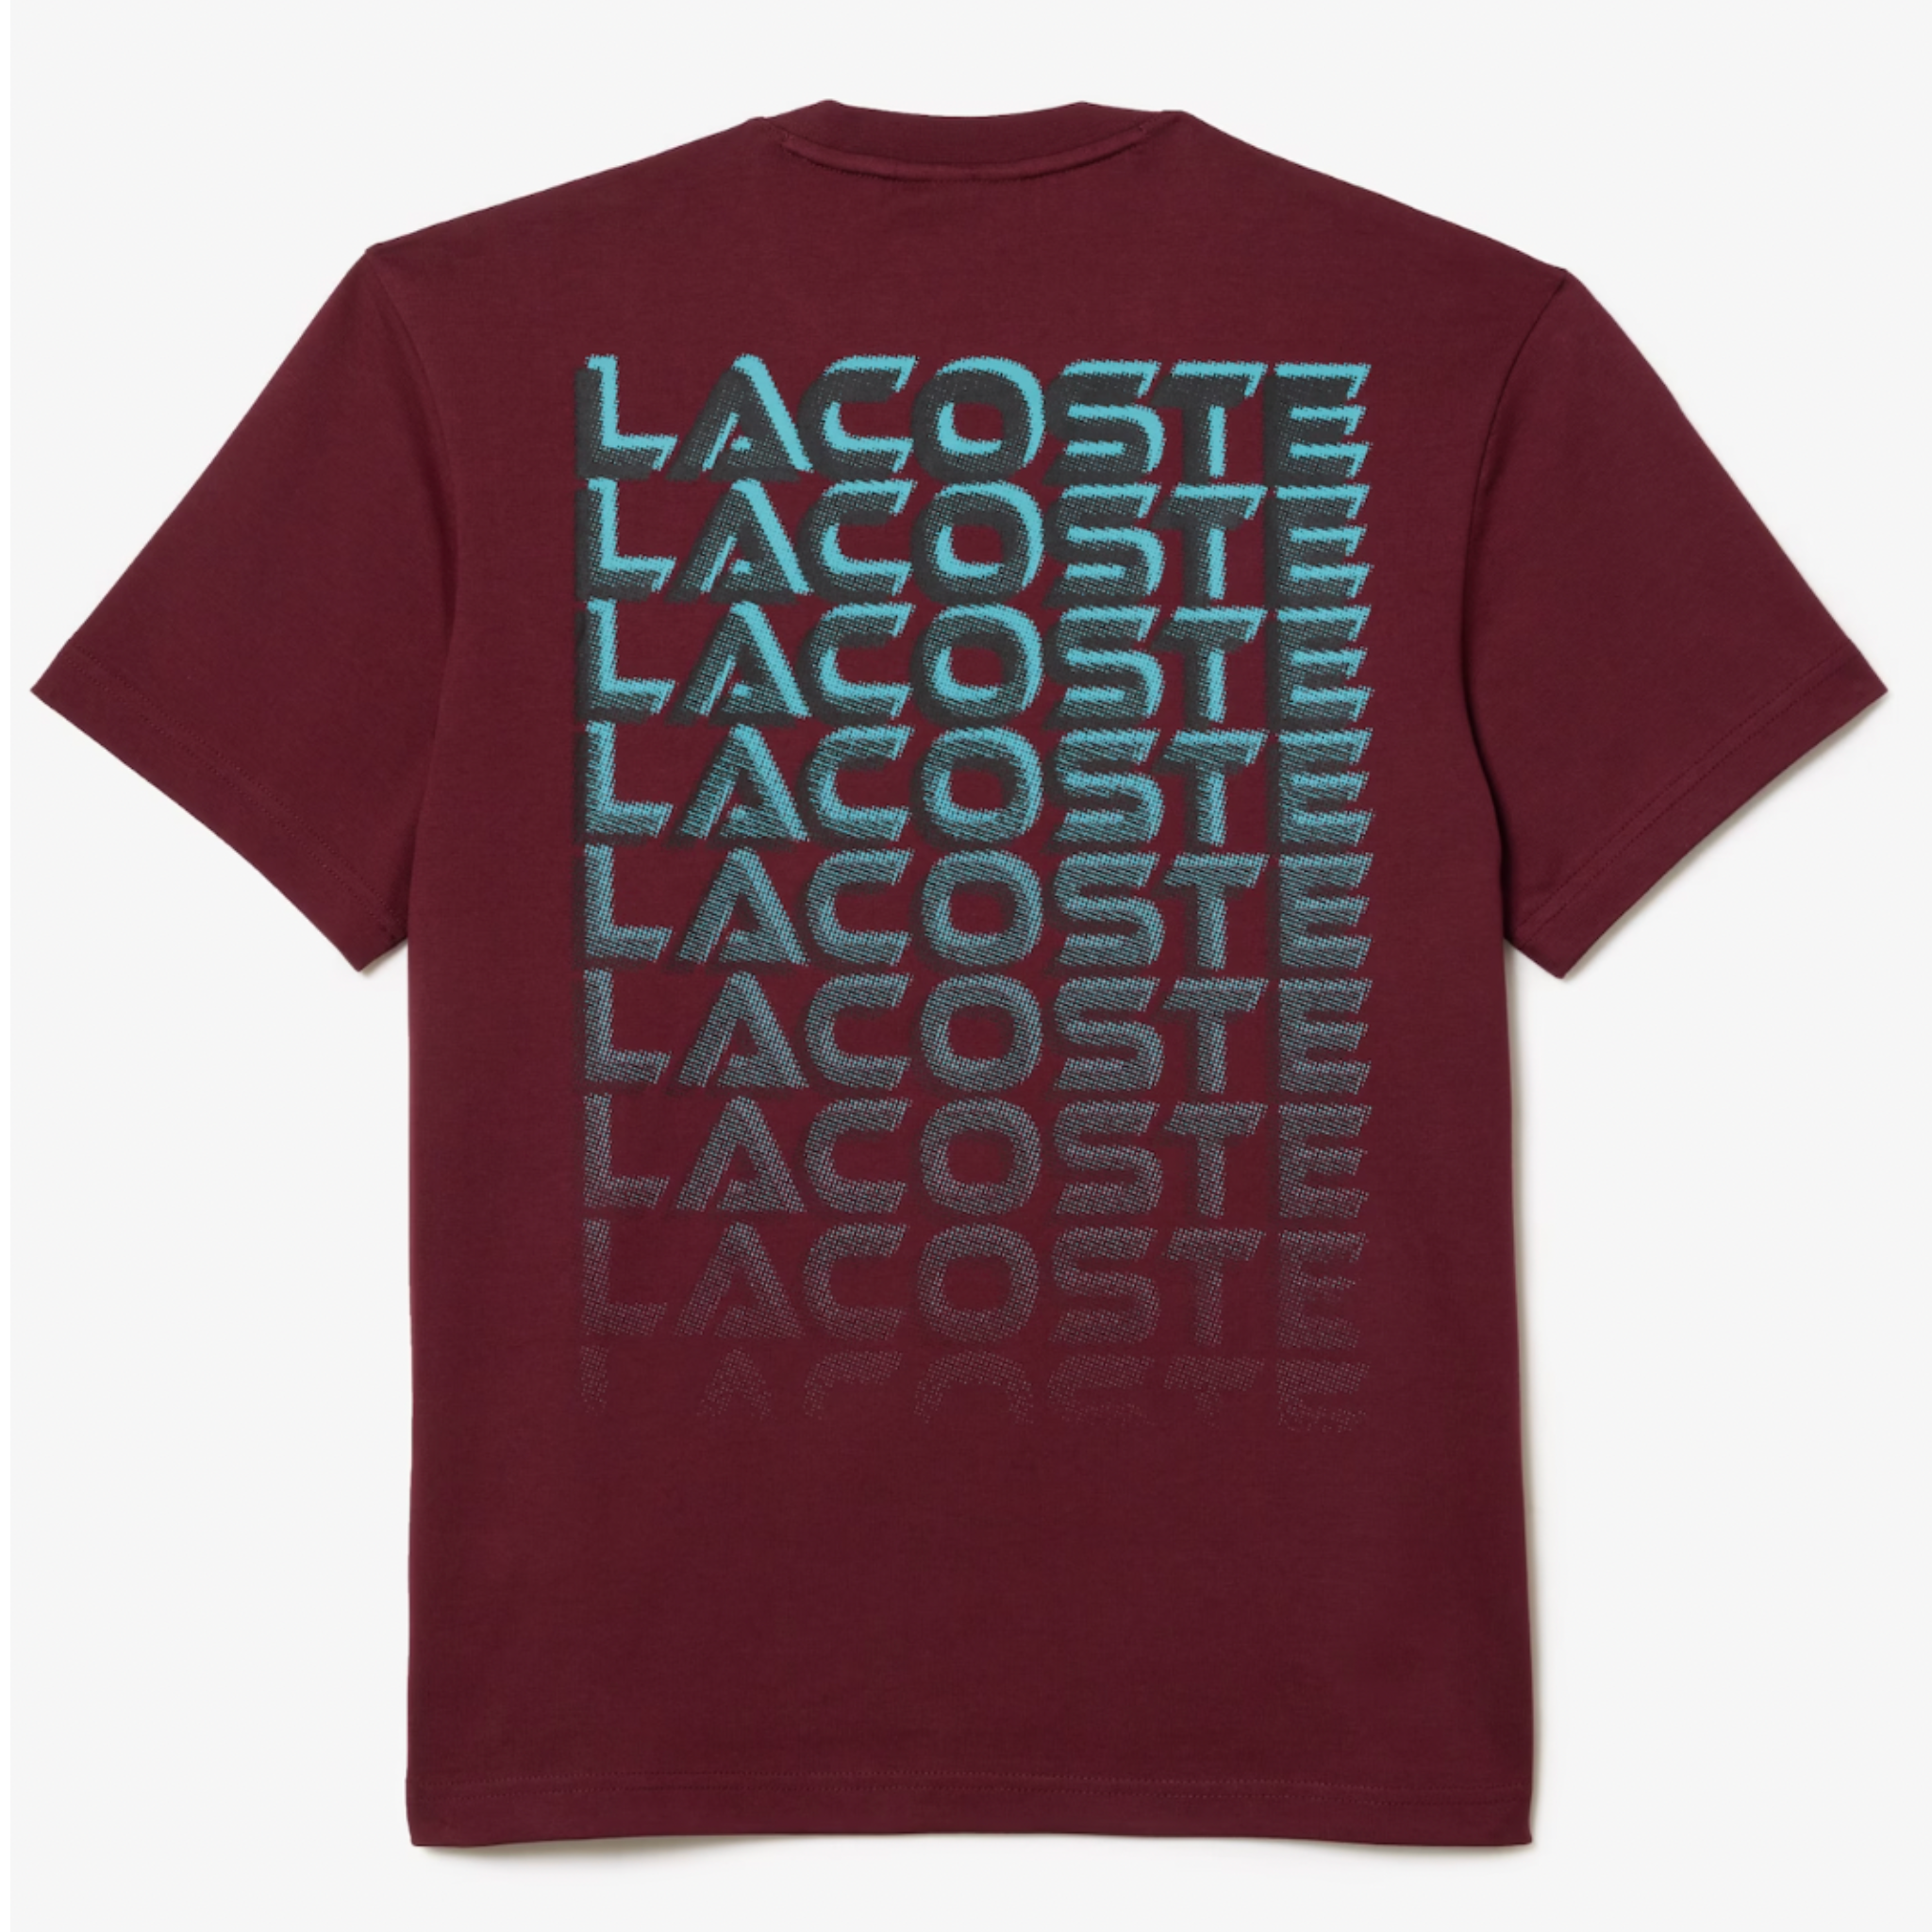 Lacoste Unisex Printed Heavy Cotton Jersey T-Shirt (Bordeaux) - Lacoste